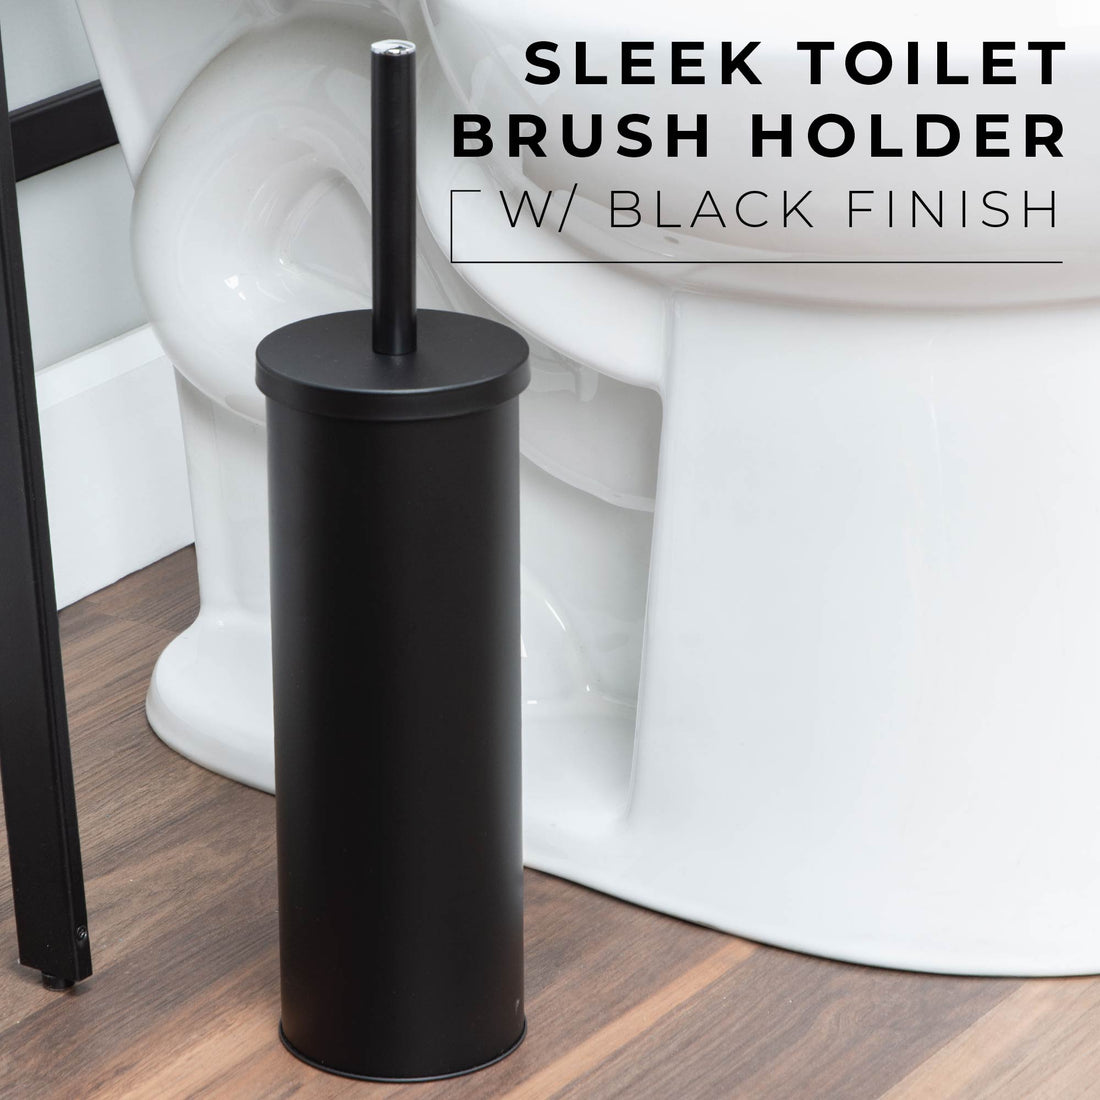 Toilet Brush and Holder, 2-Pack (Matte Black Finish) - Utility sinks vanites Tehila